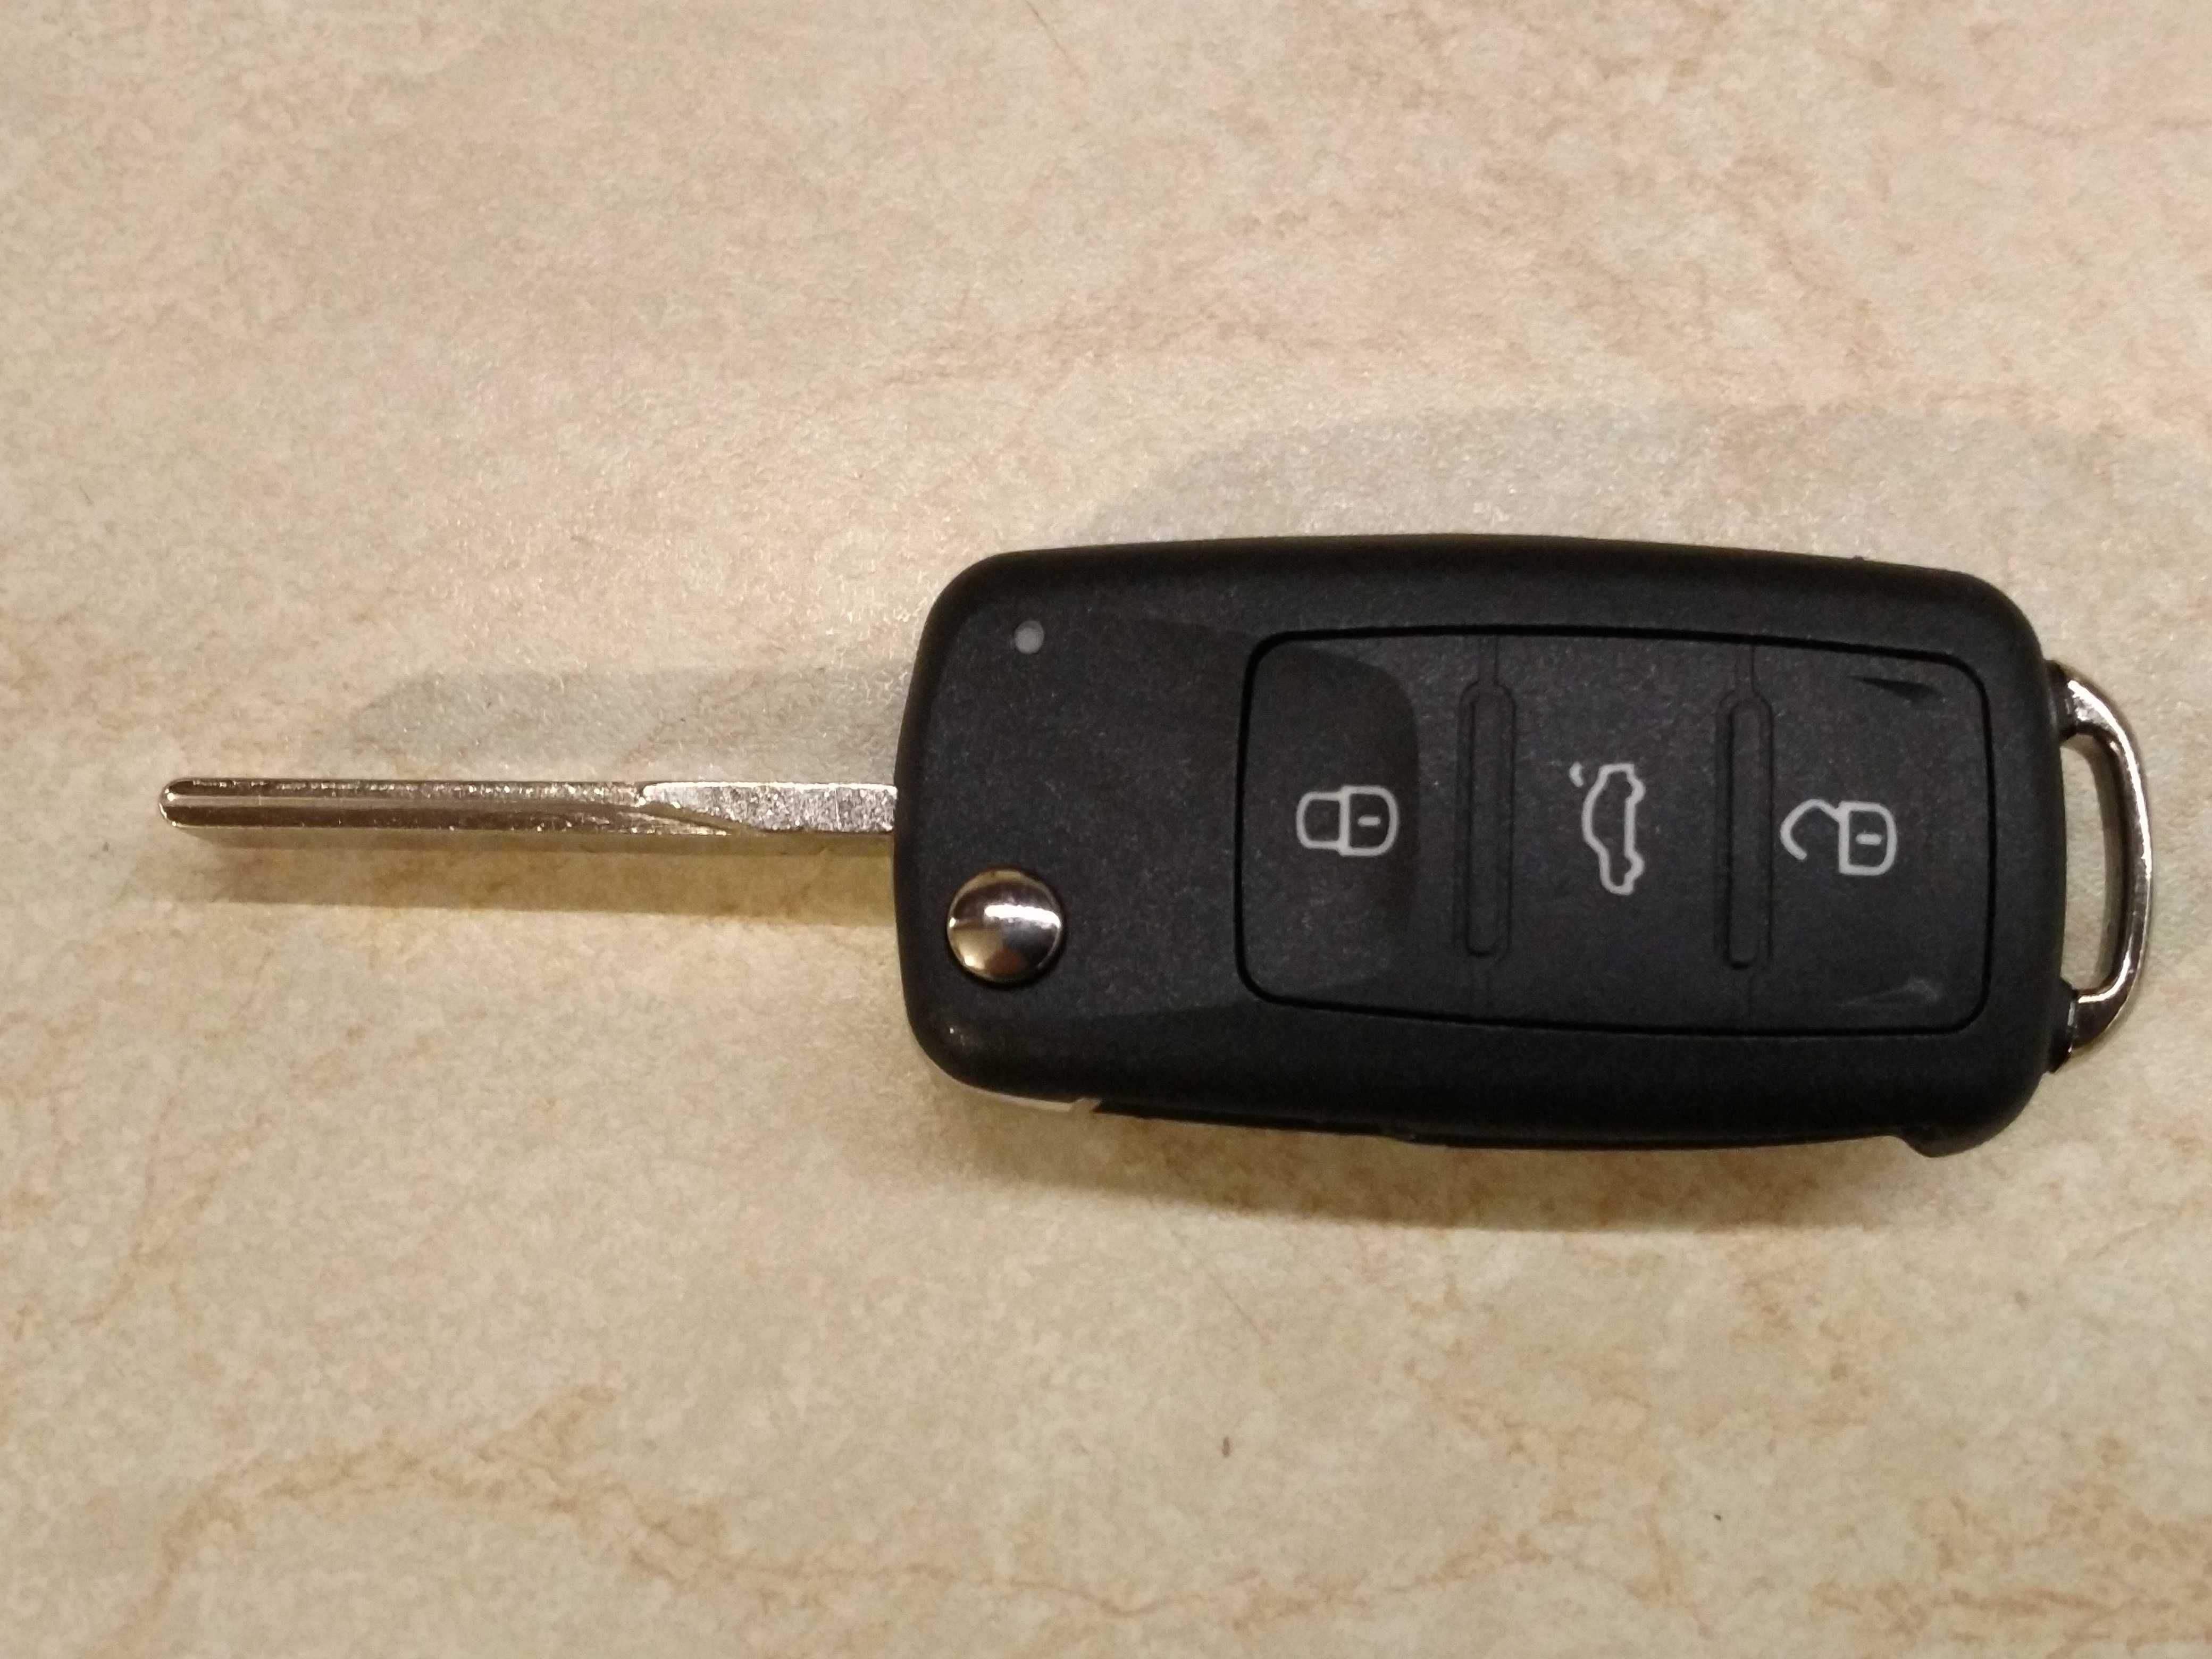 Ключ для VW Volkswagen 5K0837202AE 315Mhz ID48 4 кнопки